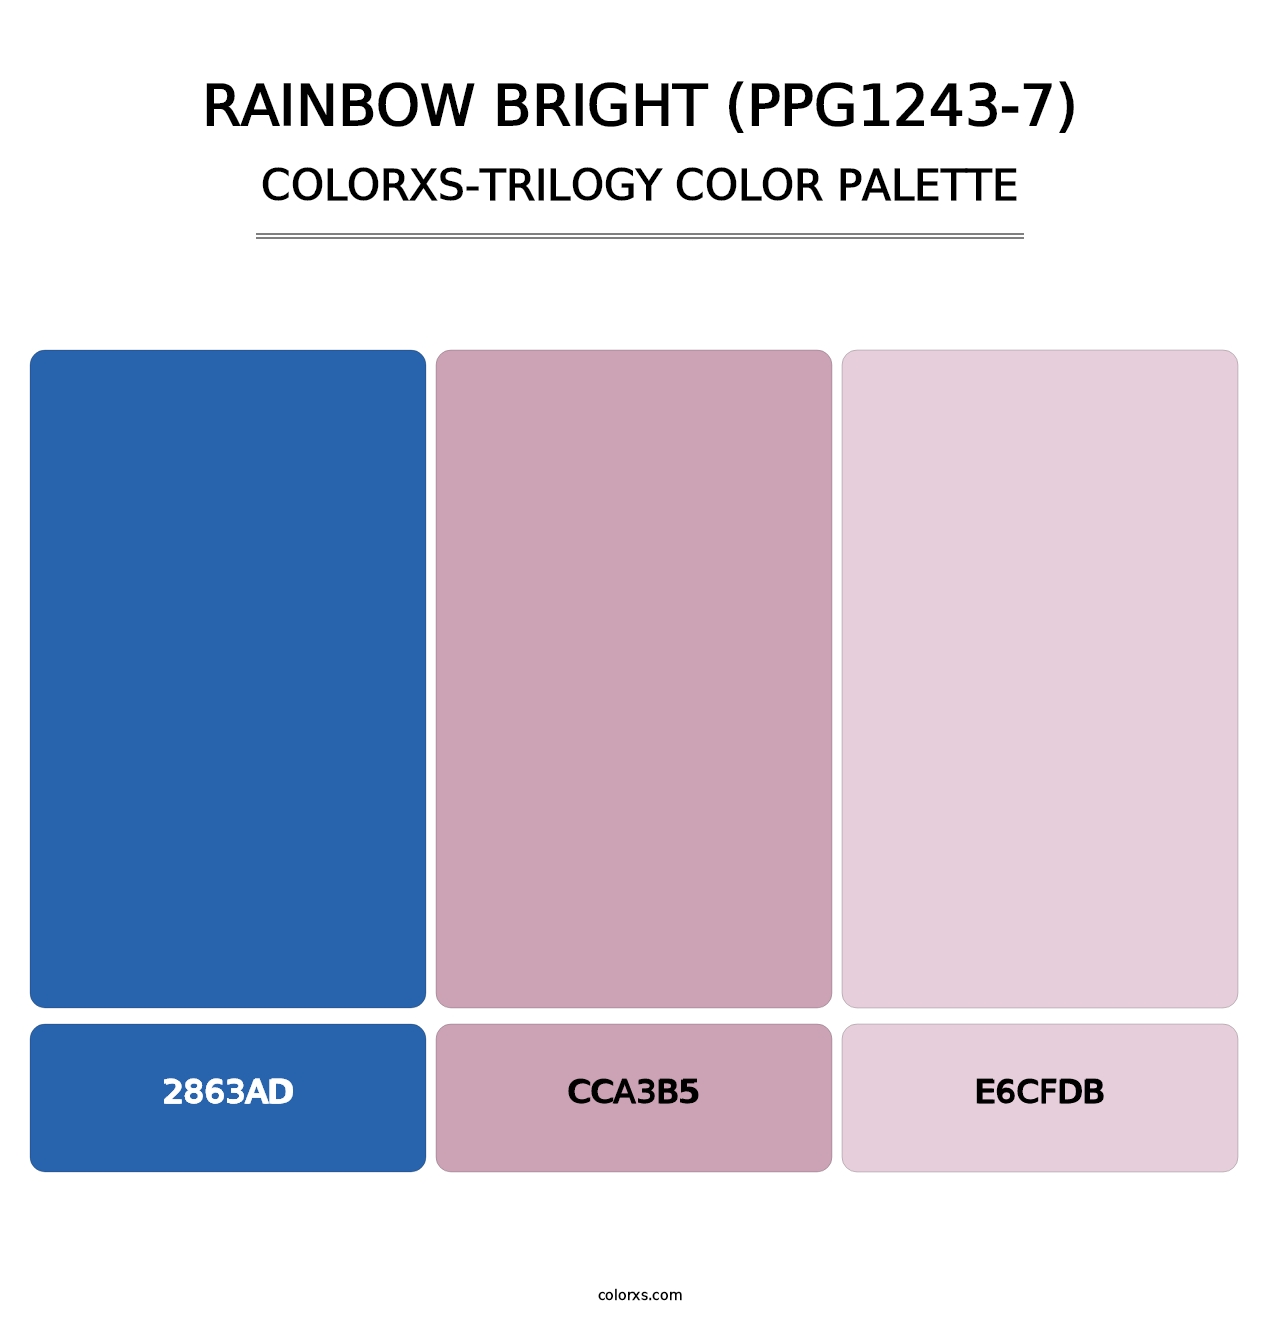 Rainbow Bright (PPG1243-7) - Colorxs Trilogy Palette